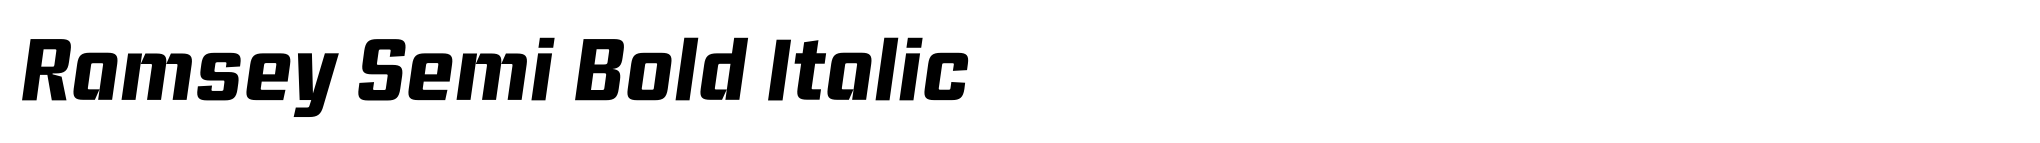 Ramsey Semi Bold Italic image